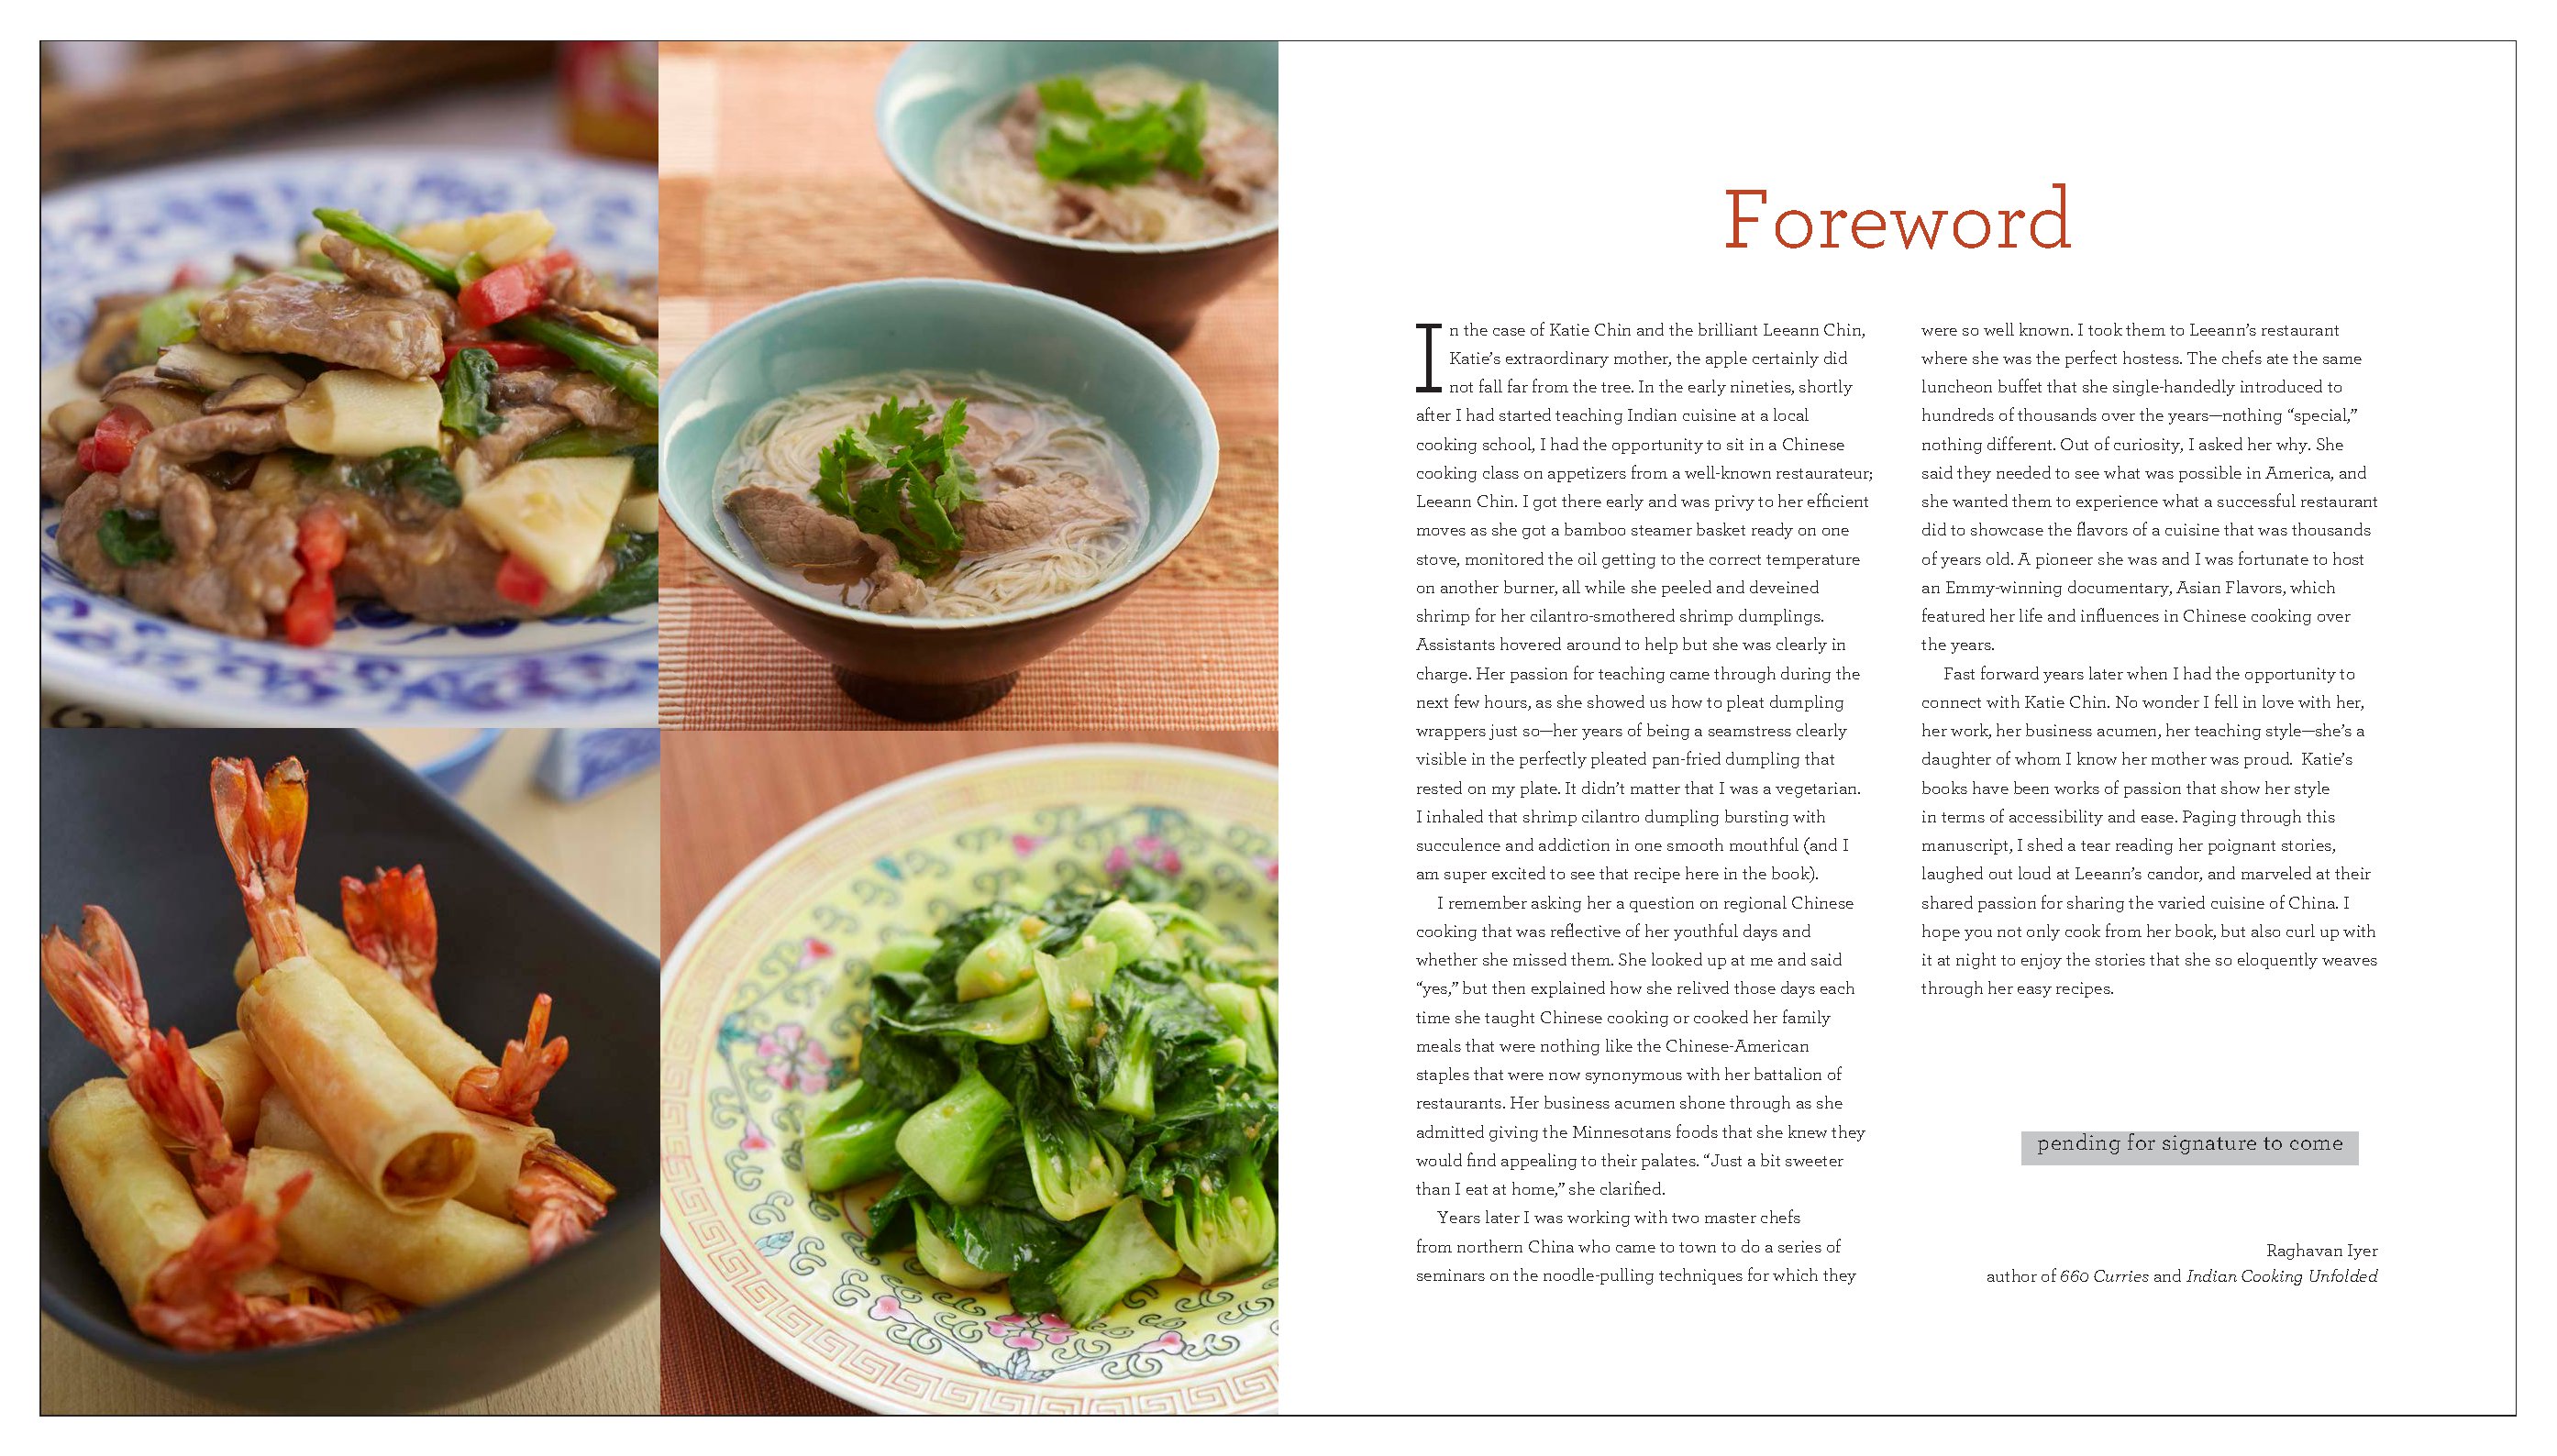 Katie Chin's Everyday Chinese Cookbook